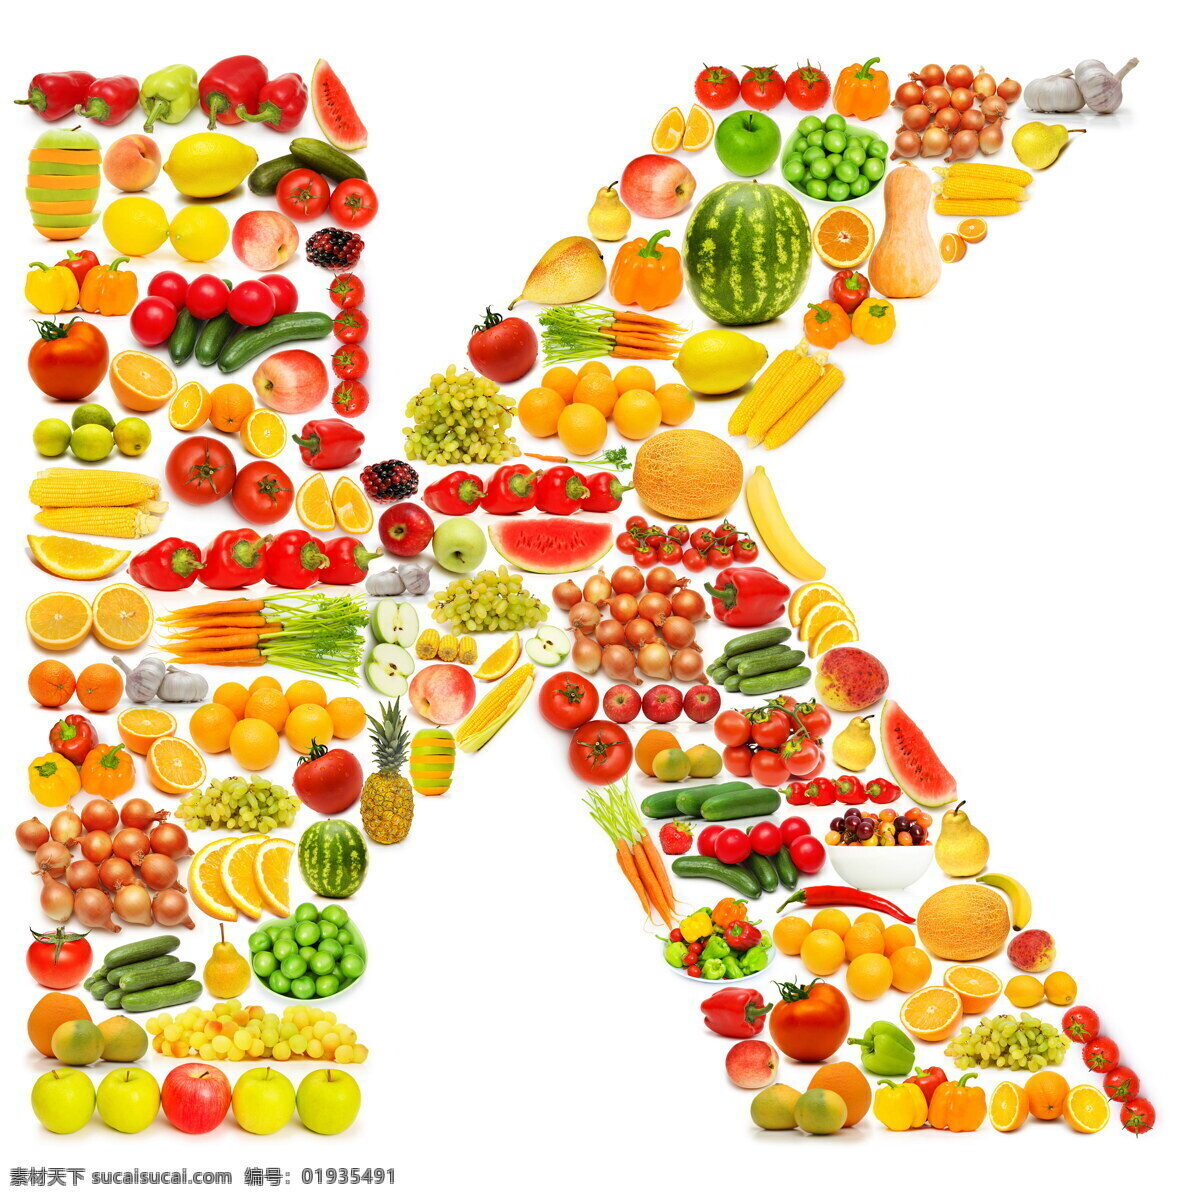 蔬菜水果 组成 字母 k 辣椒 葡萄 橙子 蔬菜 水果 食物 食材 水果蔬菜 餐饮美食 书画文字 文化艺术 白色